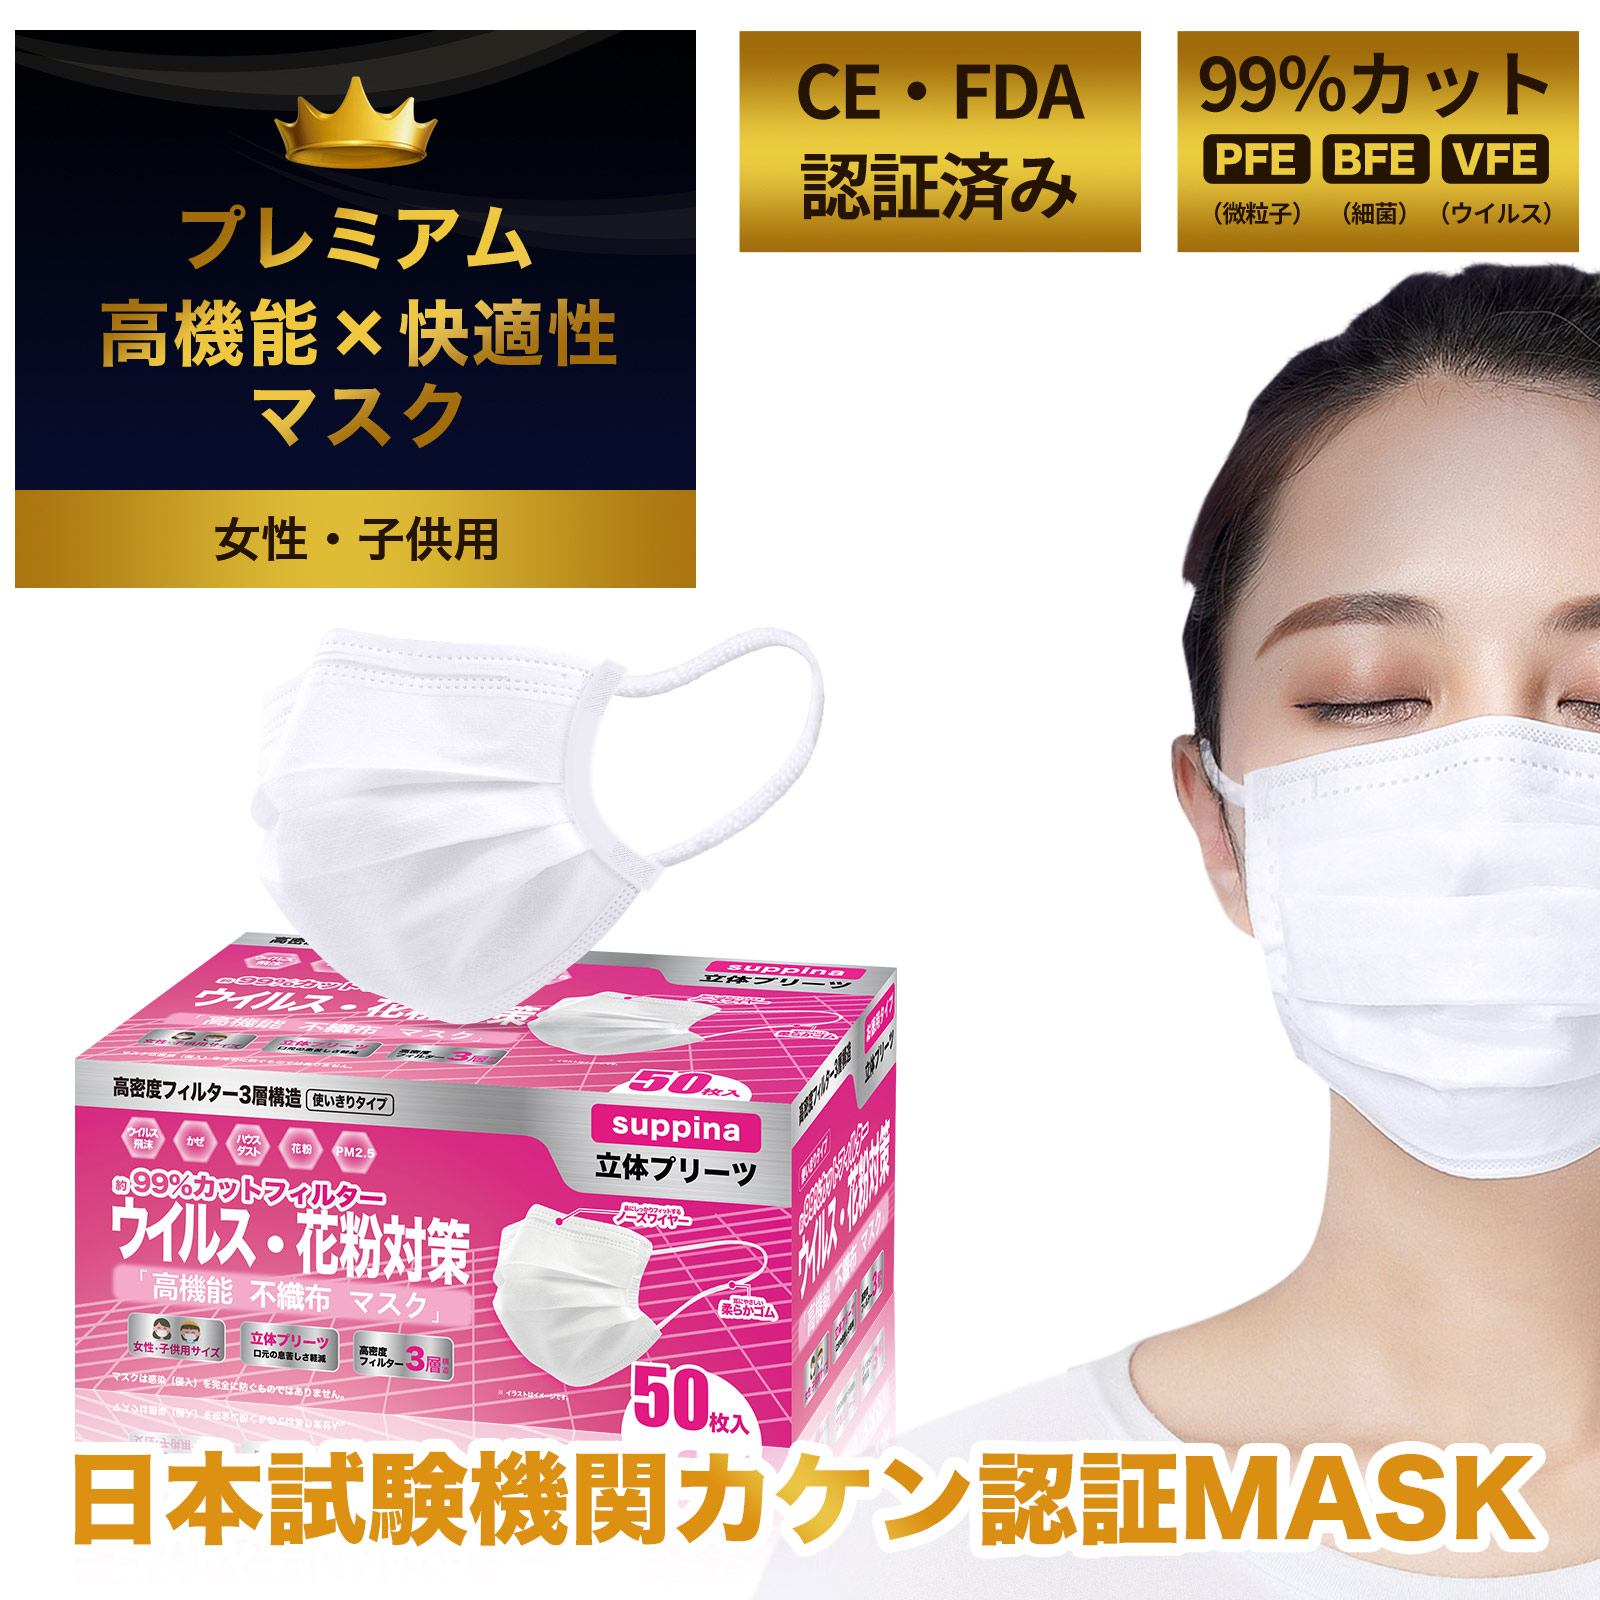 日本機構検査済 suppina 99%CUT マスク 女性・子供用 小さめサイズ  高機能マスク お徳用 50枚入 MASK